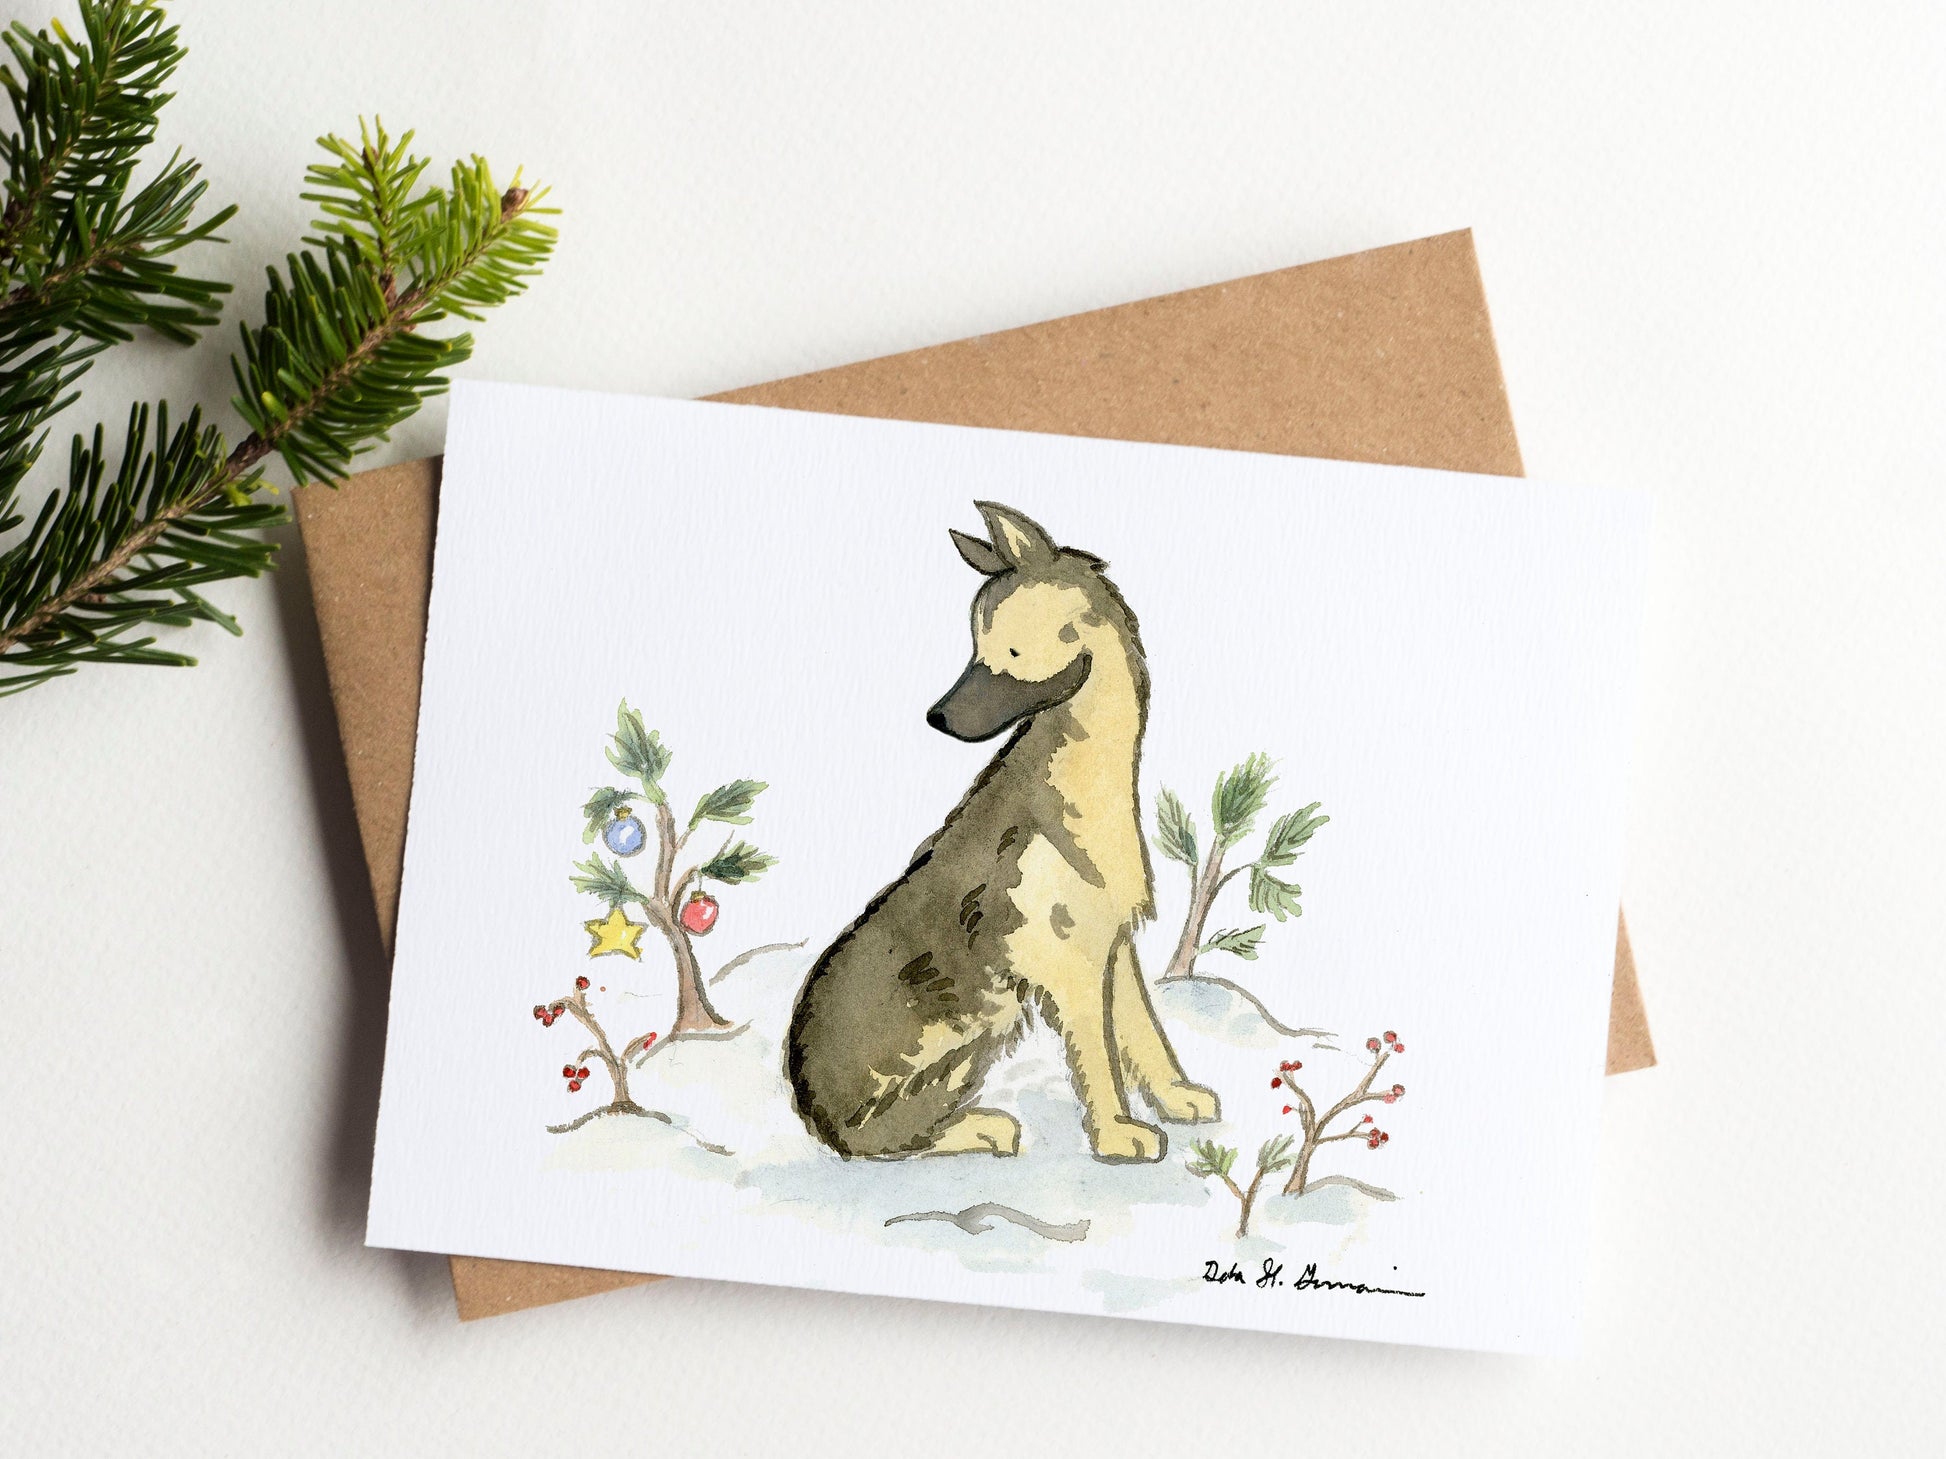 German Shepherd Christmas Card Set, German Shepherd Holiday Card, Cute German Shepherd, Watercolor German Shepherd Card, Dog Lover Card